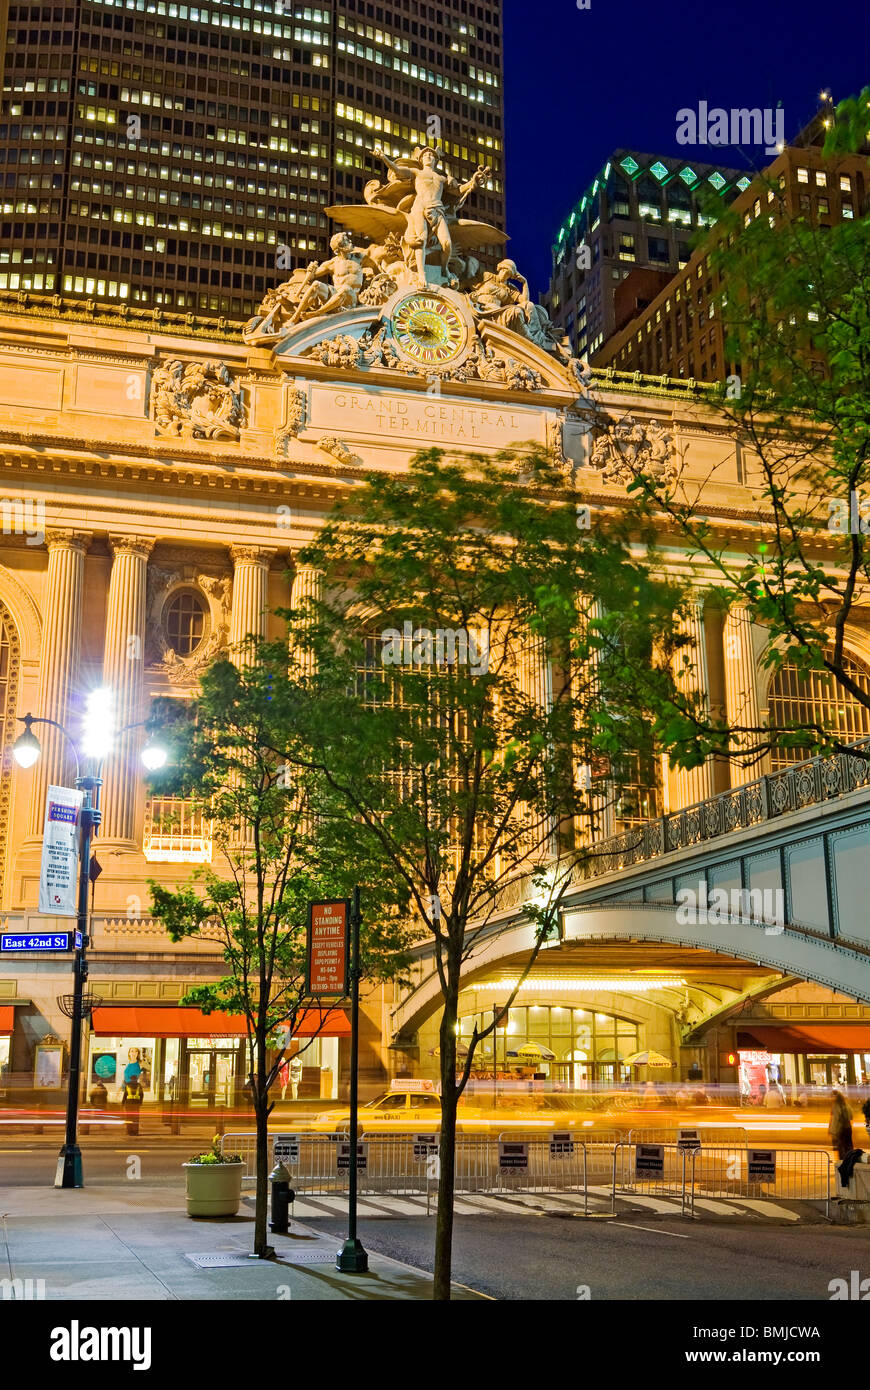 Ingresso principale al Grand Central Terminal sulla 42nd Street, New York City. Foto Stock